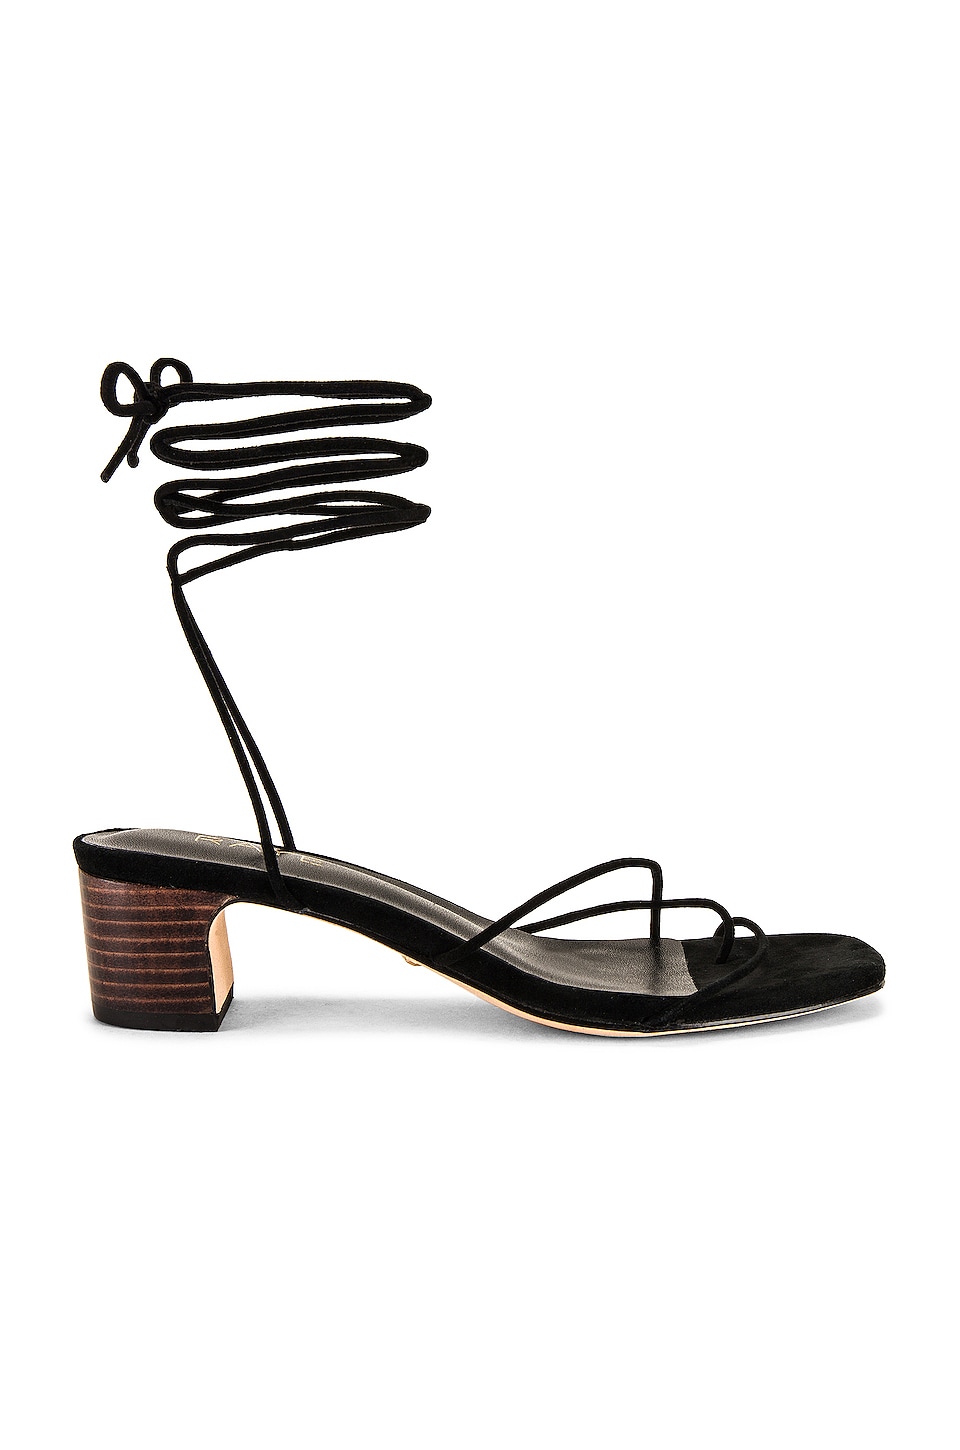 RAYE Talia Heel in Black | REVOLVE